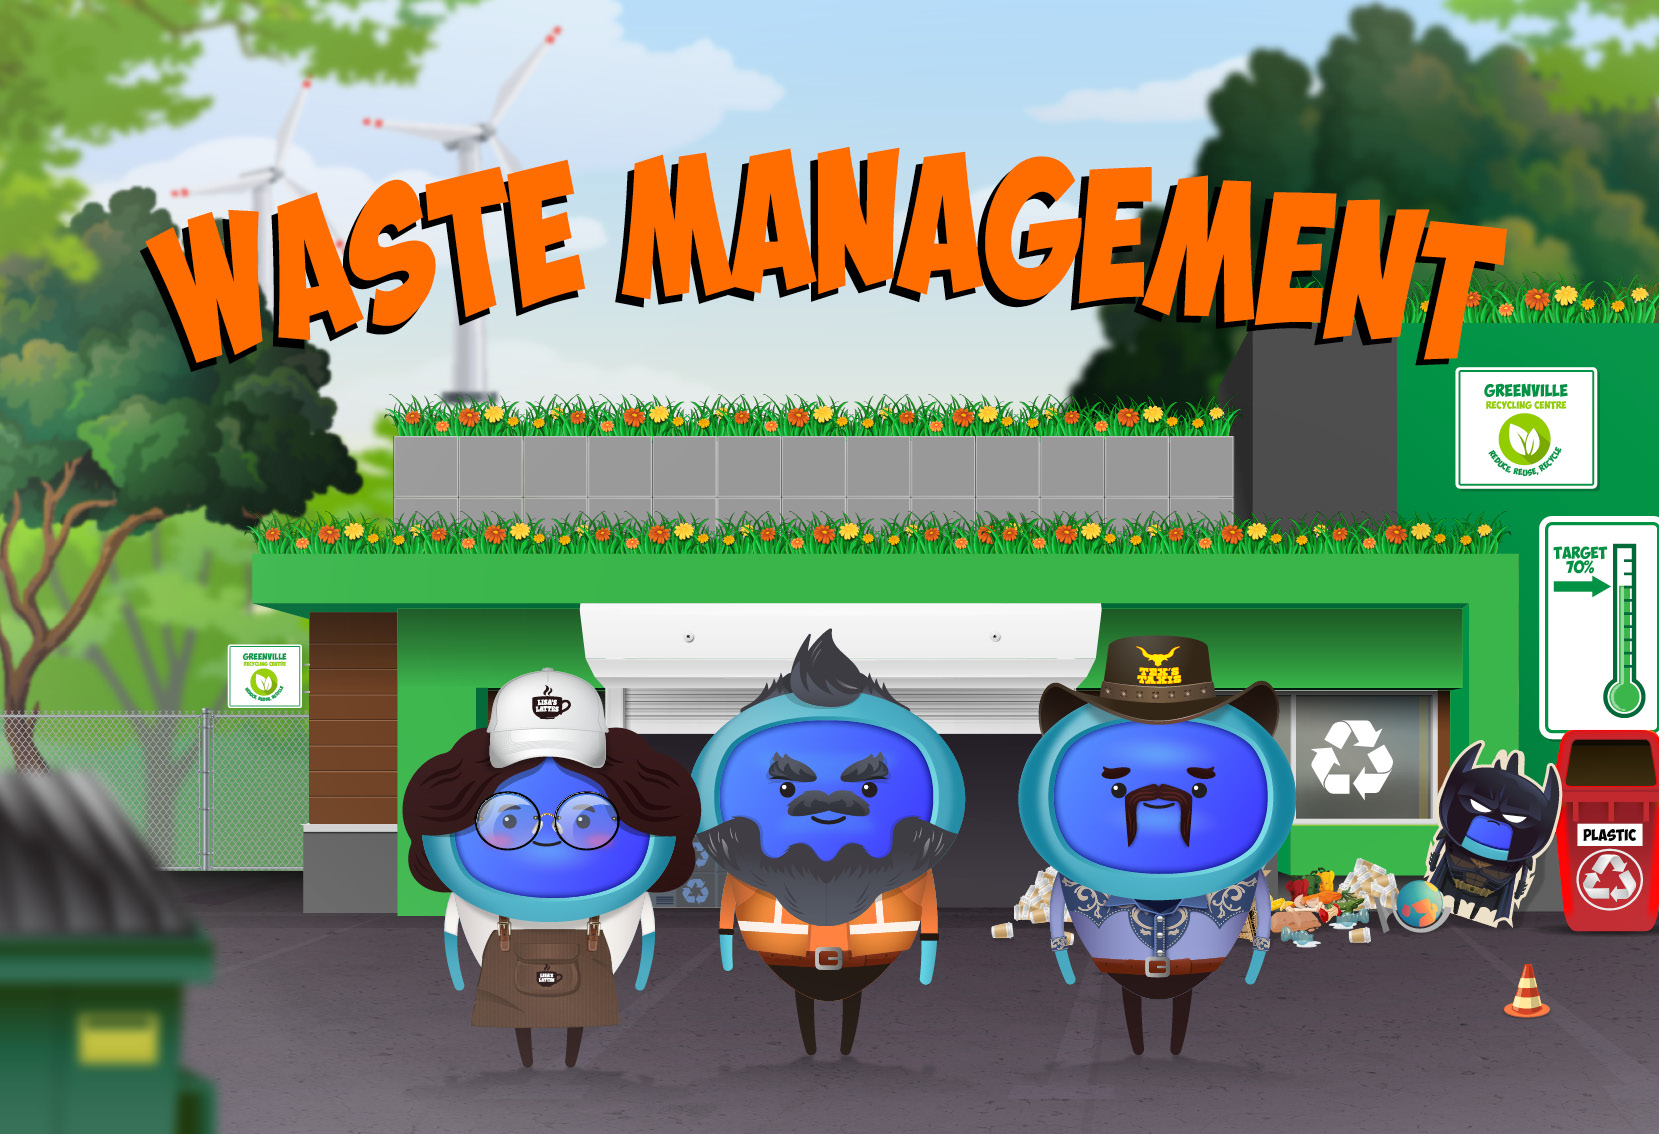 iAM 00212 - Waste Management - LMS Thumbnails